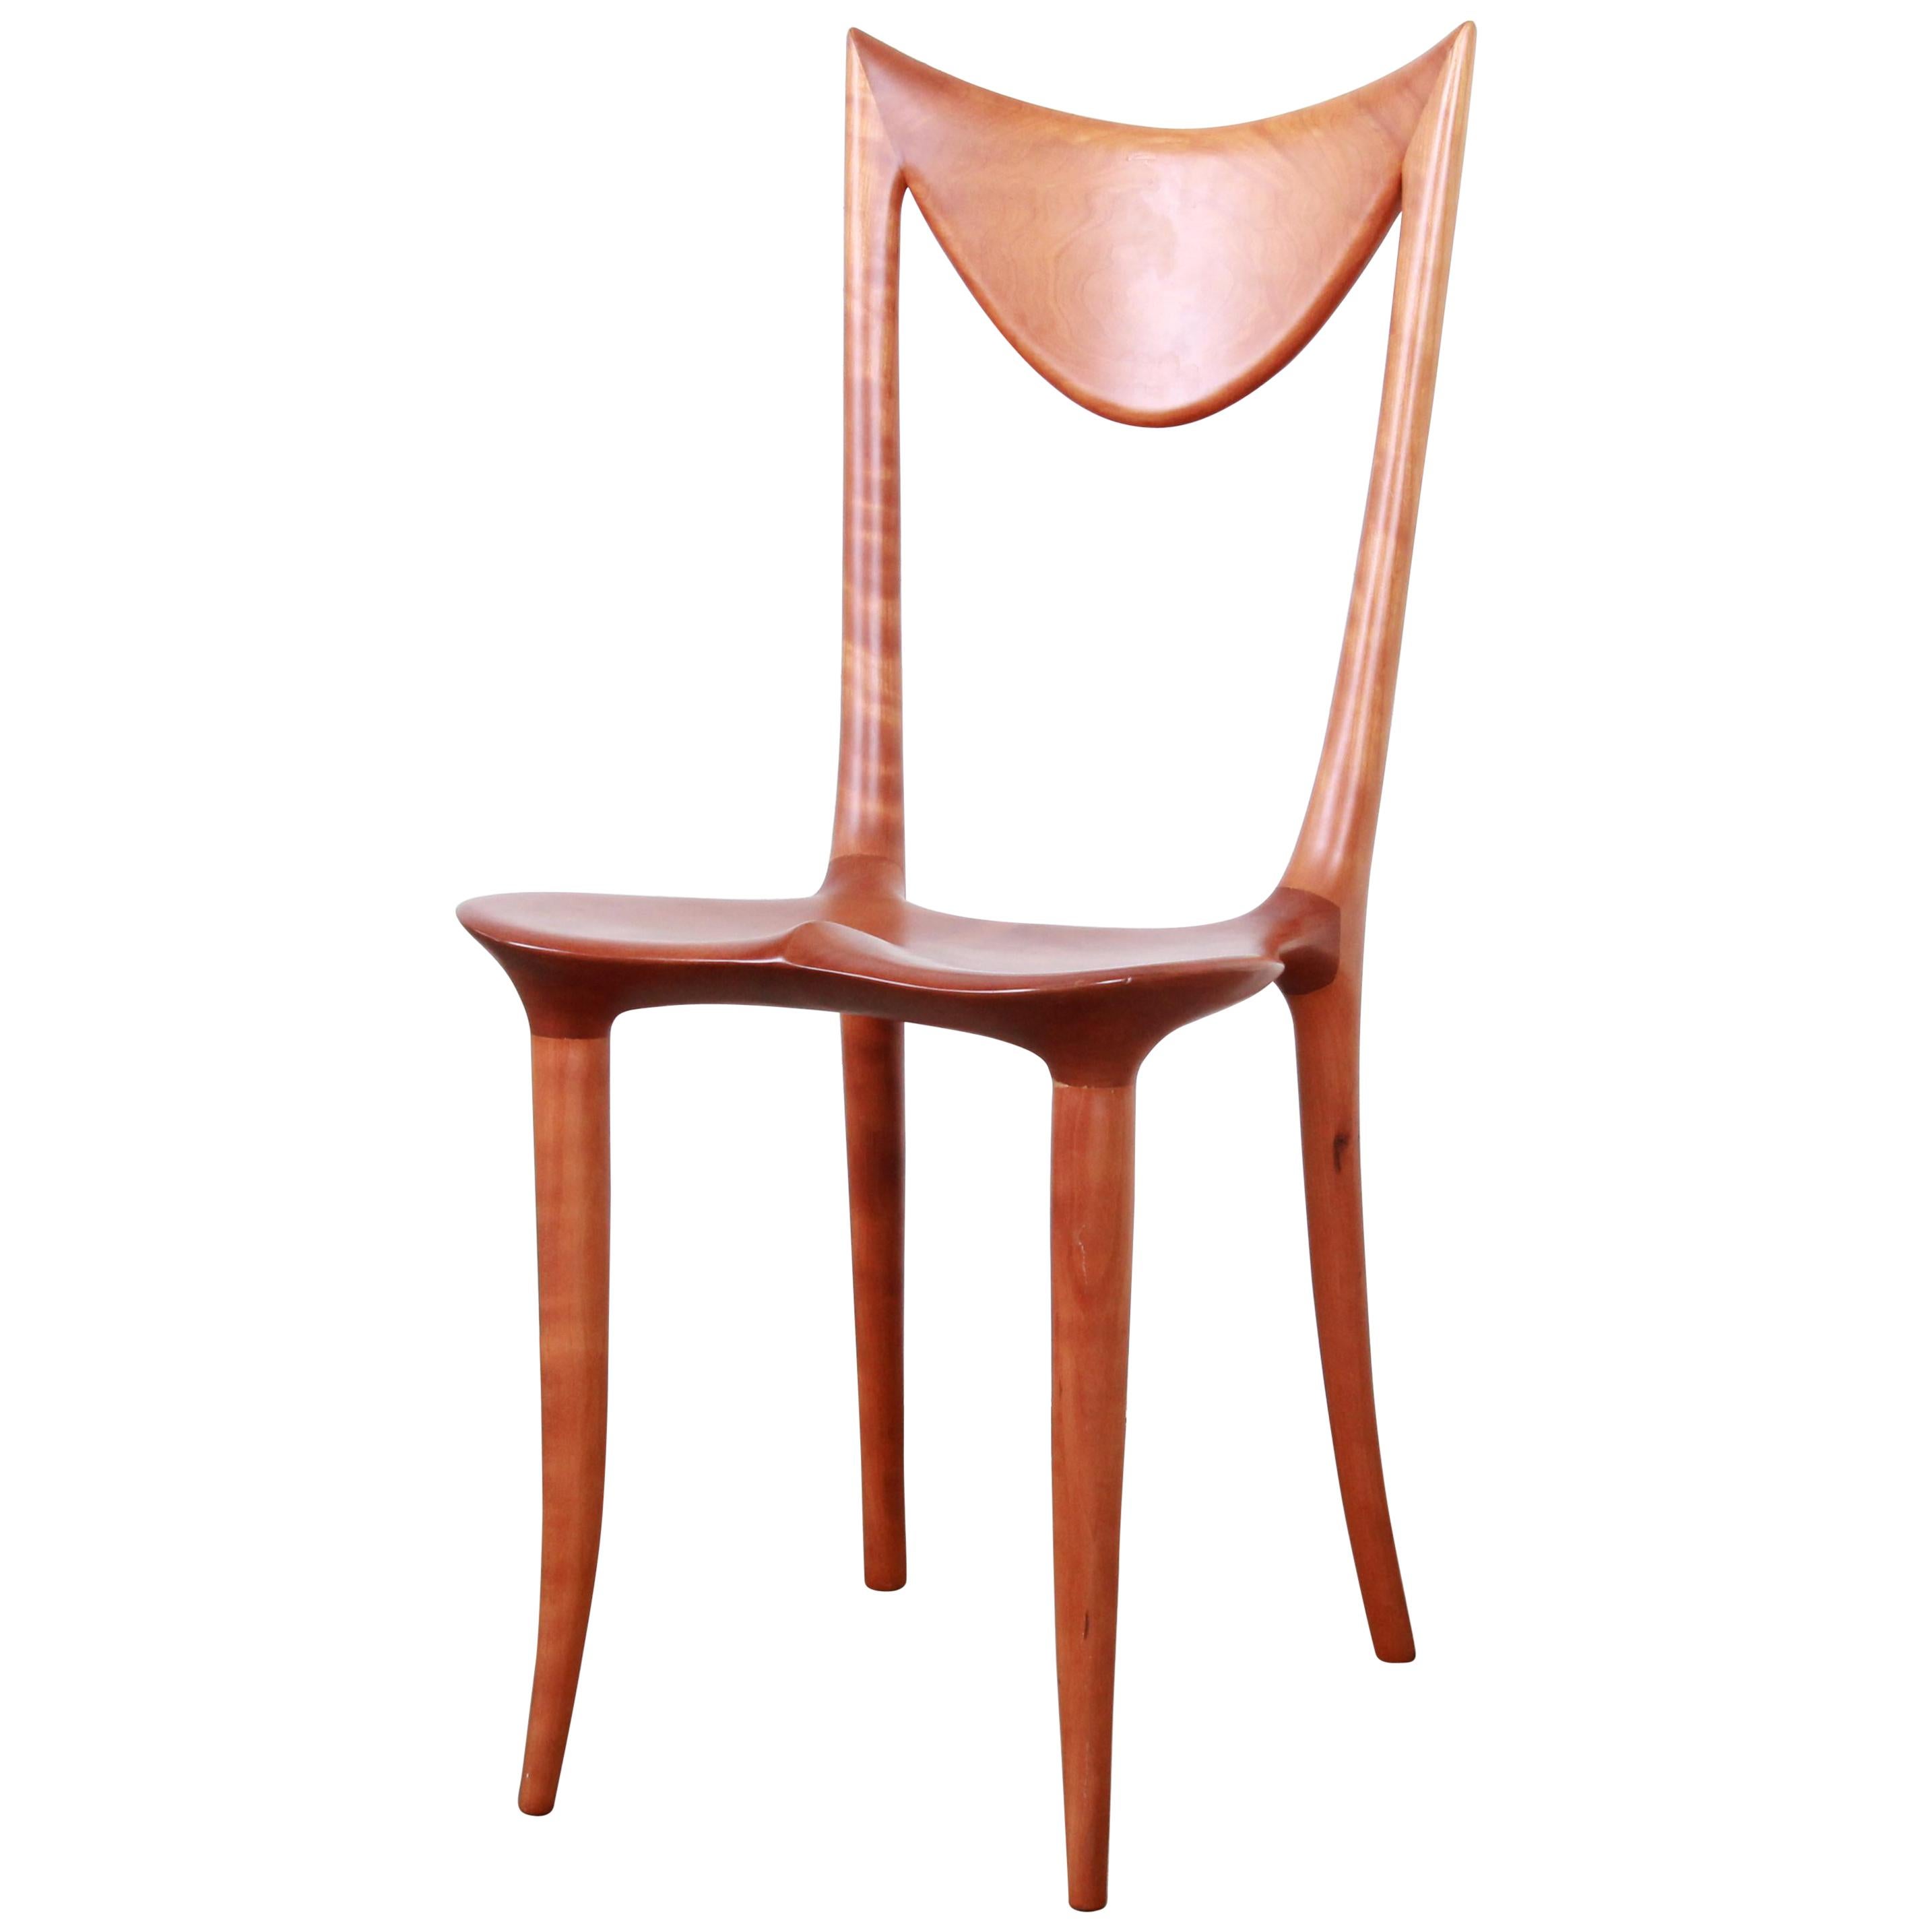 Oskar Kogoj Studio Craftsman Sculptural "Venetia" Chair